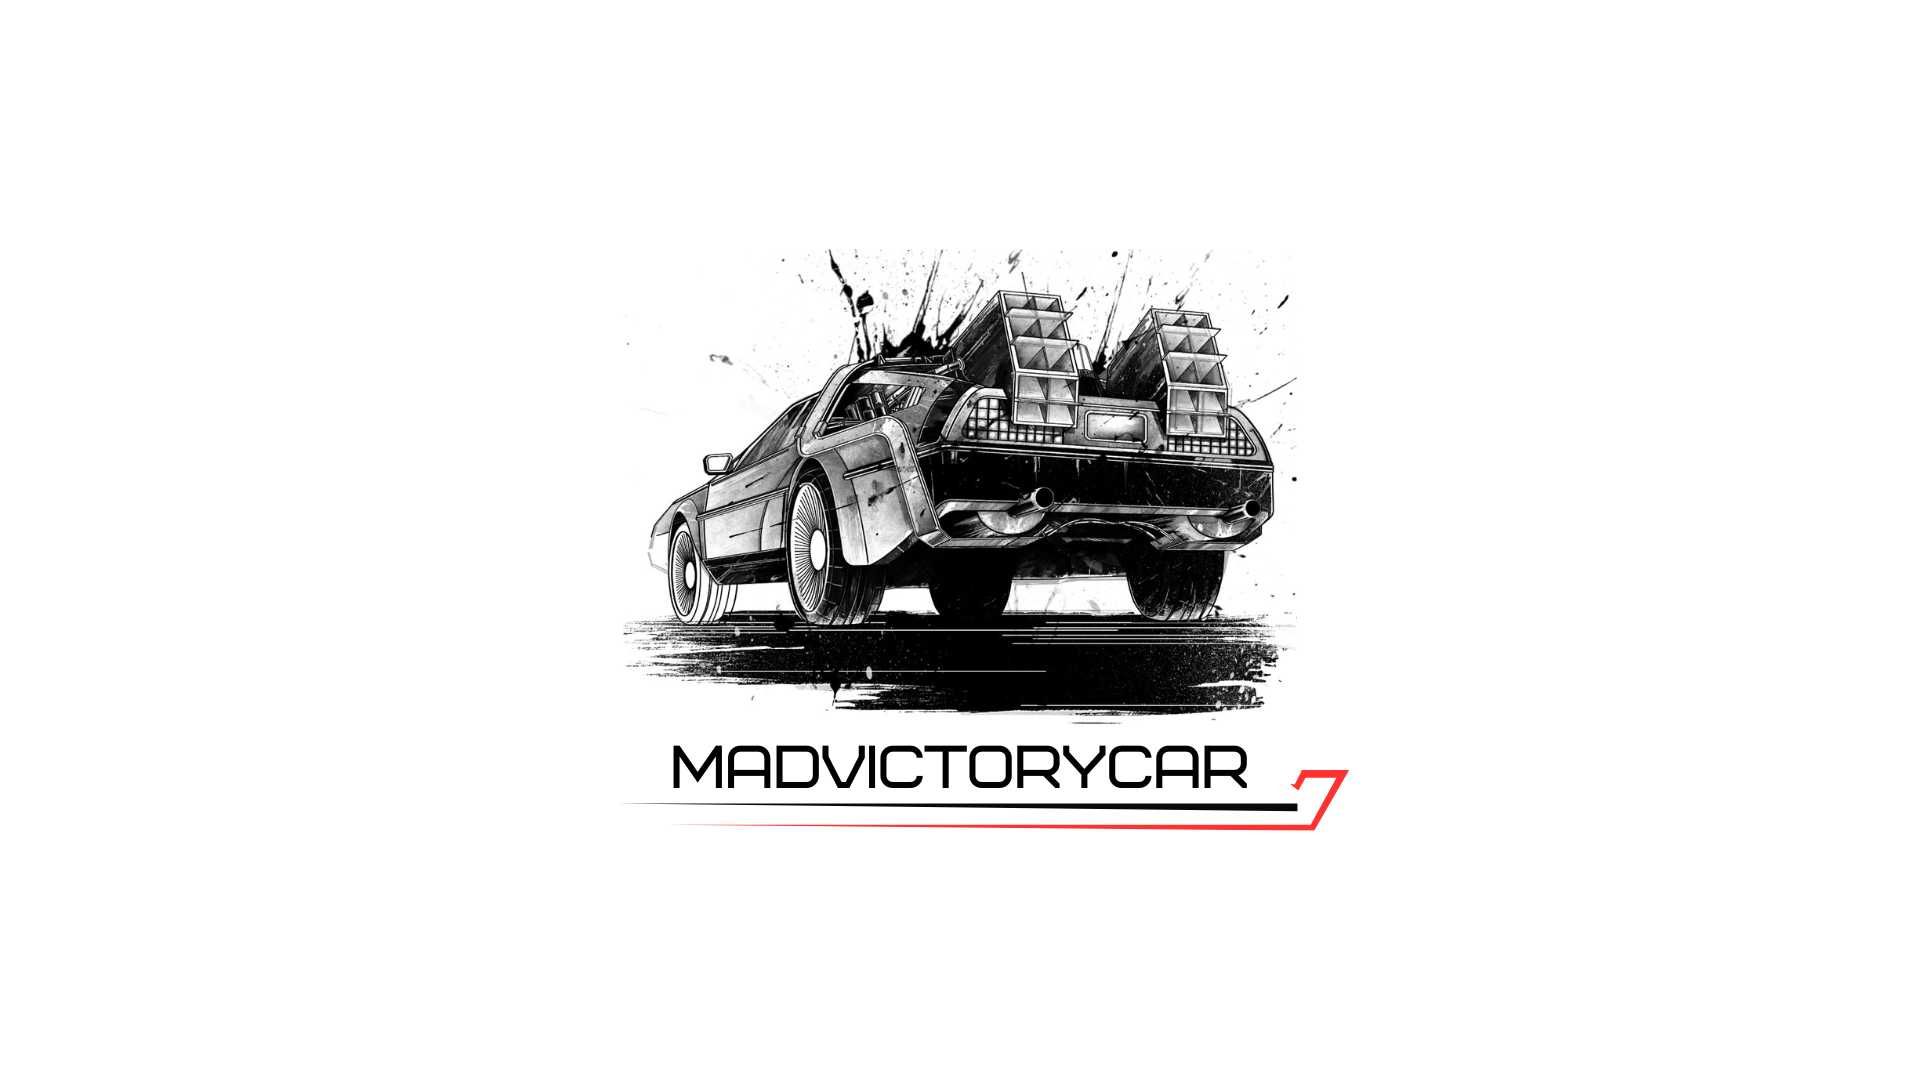 Автосервис "Mad Victory car"приглашает вас на ремонт вашего АВТО